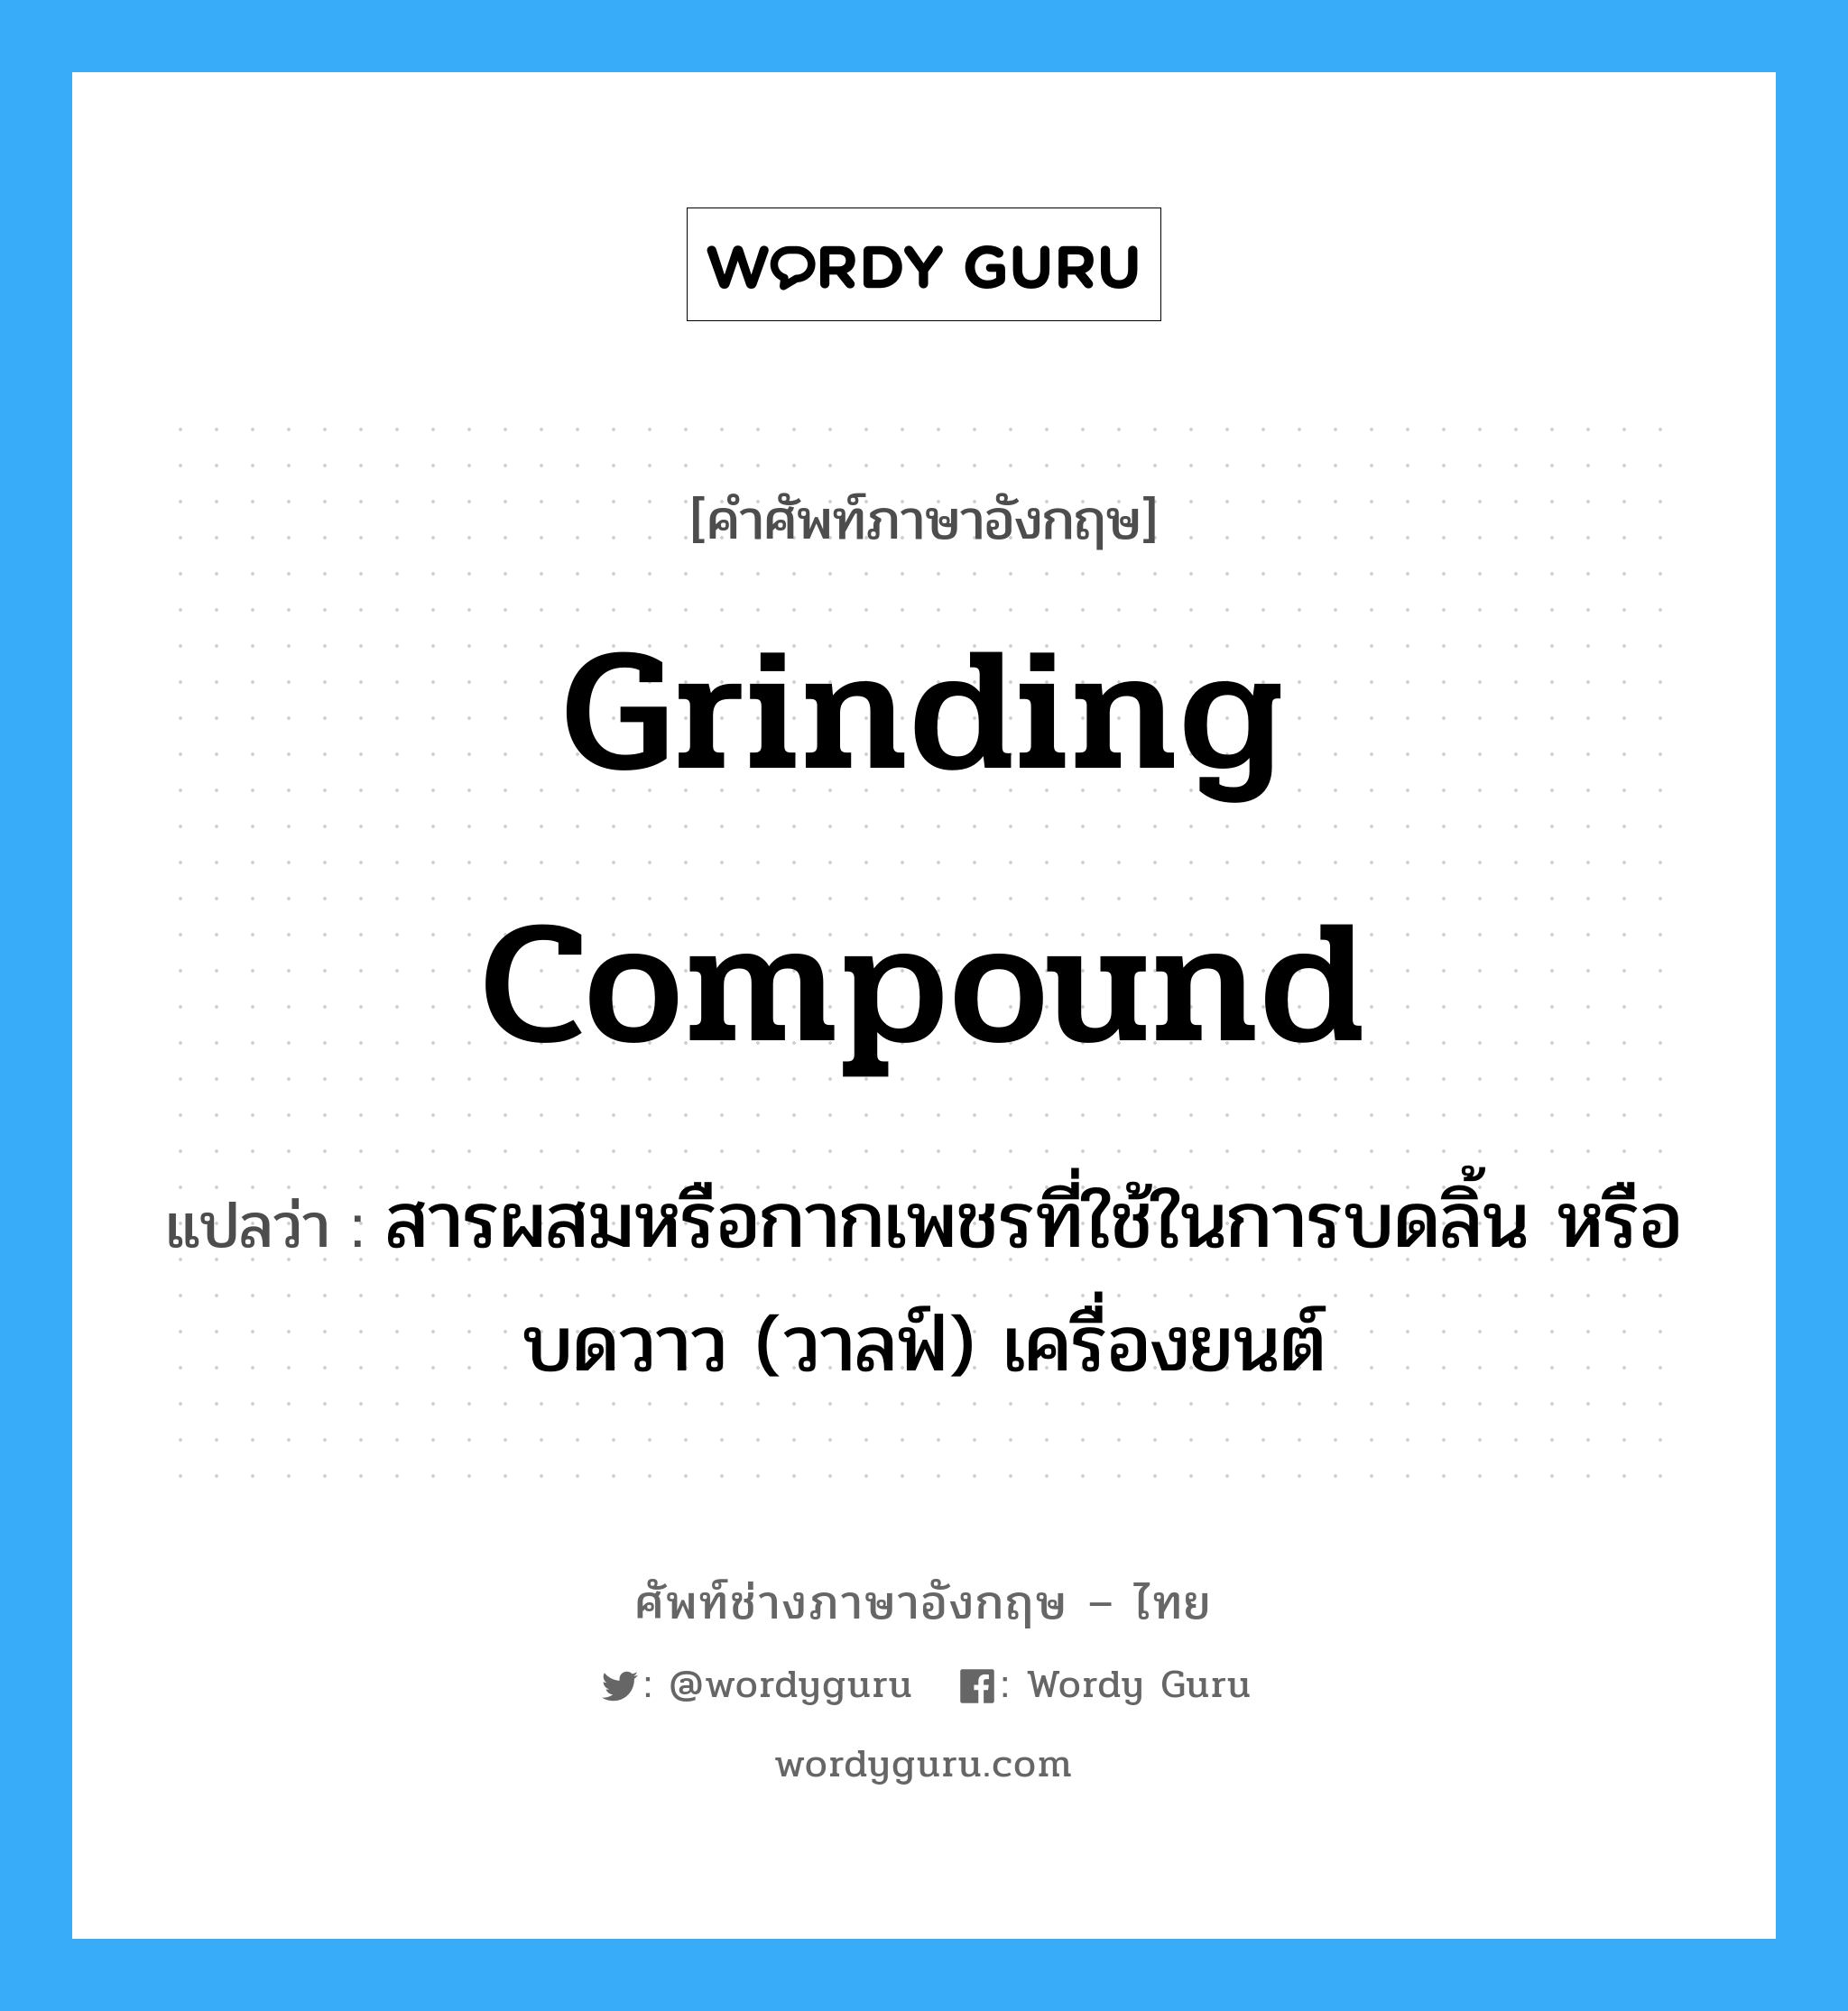 grinding compound แปลว่า?, คำศัพท์ช่างภาษาอังกฤษ - ไทย grinding compound คำศัพท์ภาษาอังกฤษ grinding compound แปลว่า สารผสมหรือกากเพชรที่ใช้ในการบดลิ้น หรือบดวาว (วาลฟ์) เครื่องยนต์